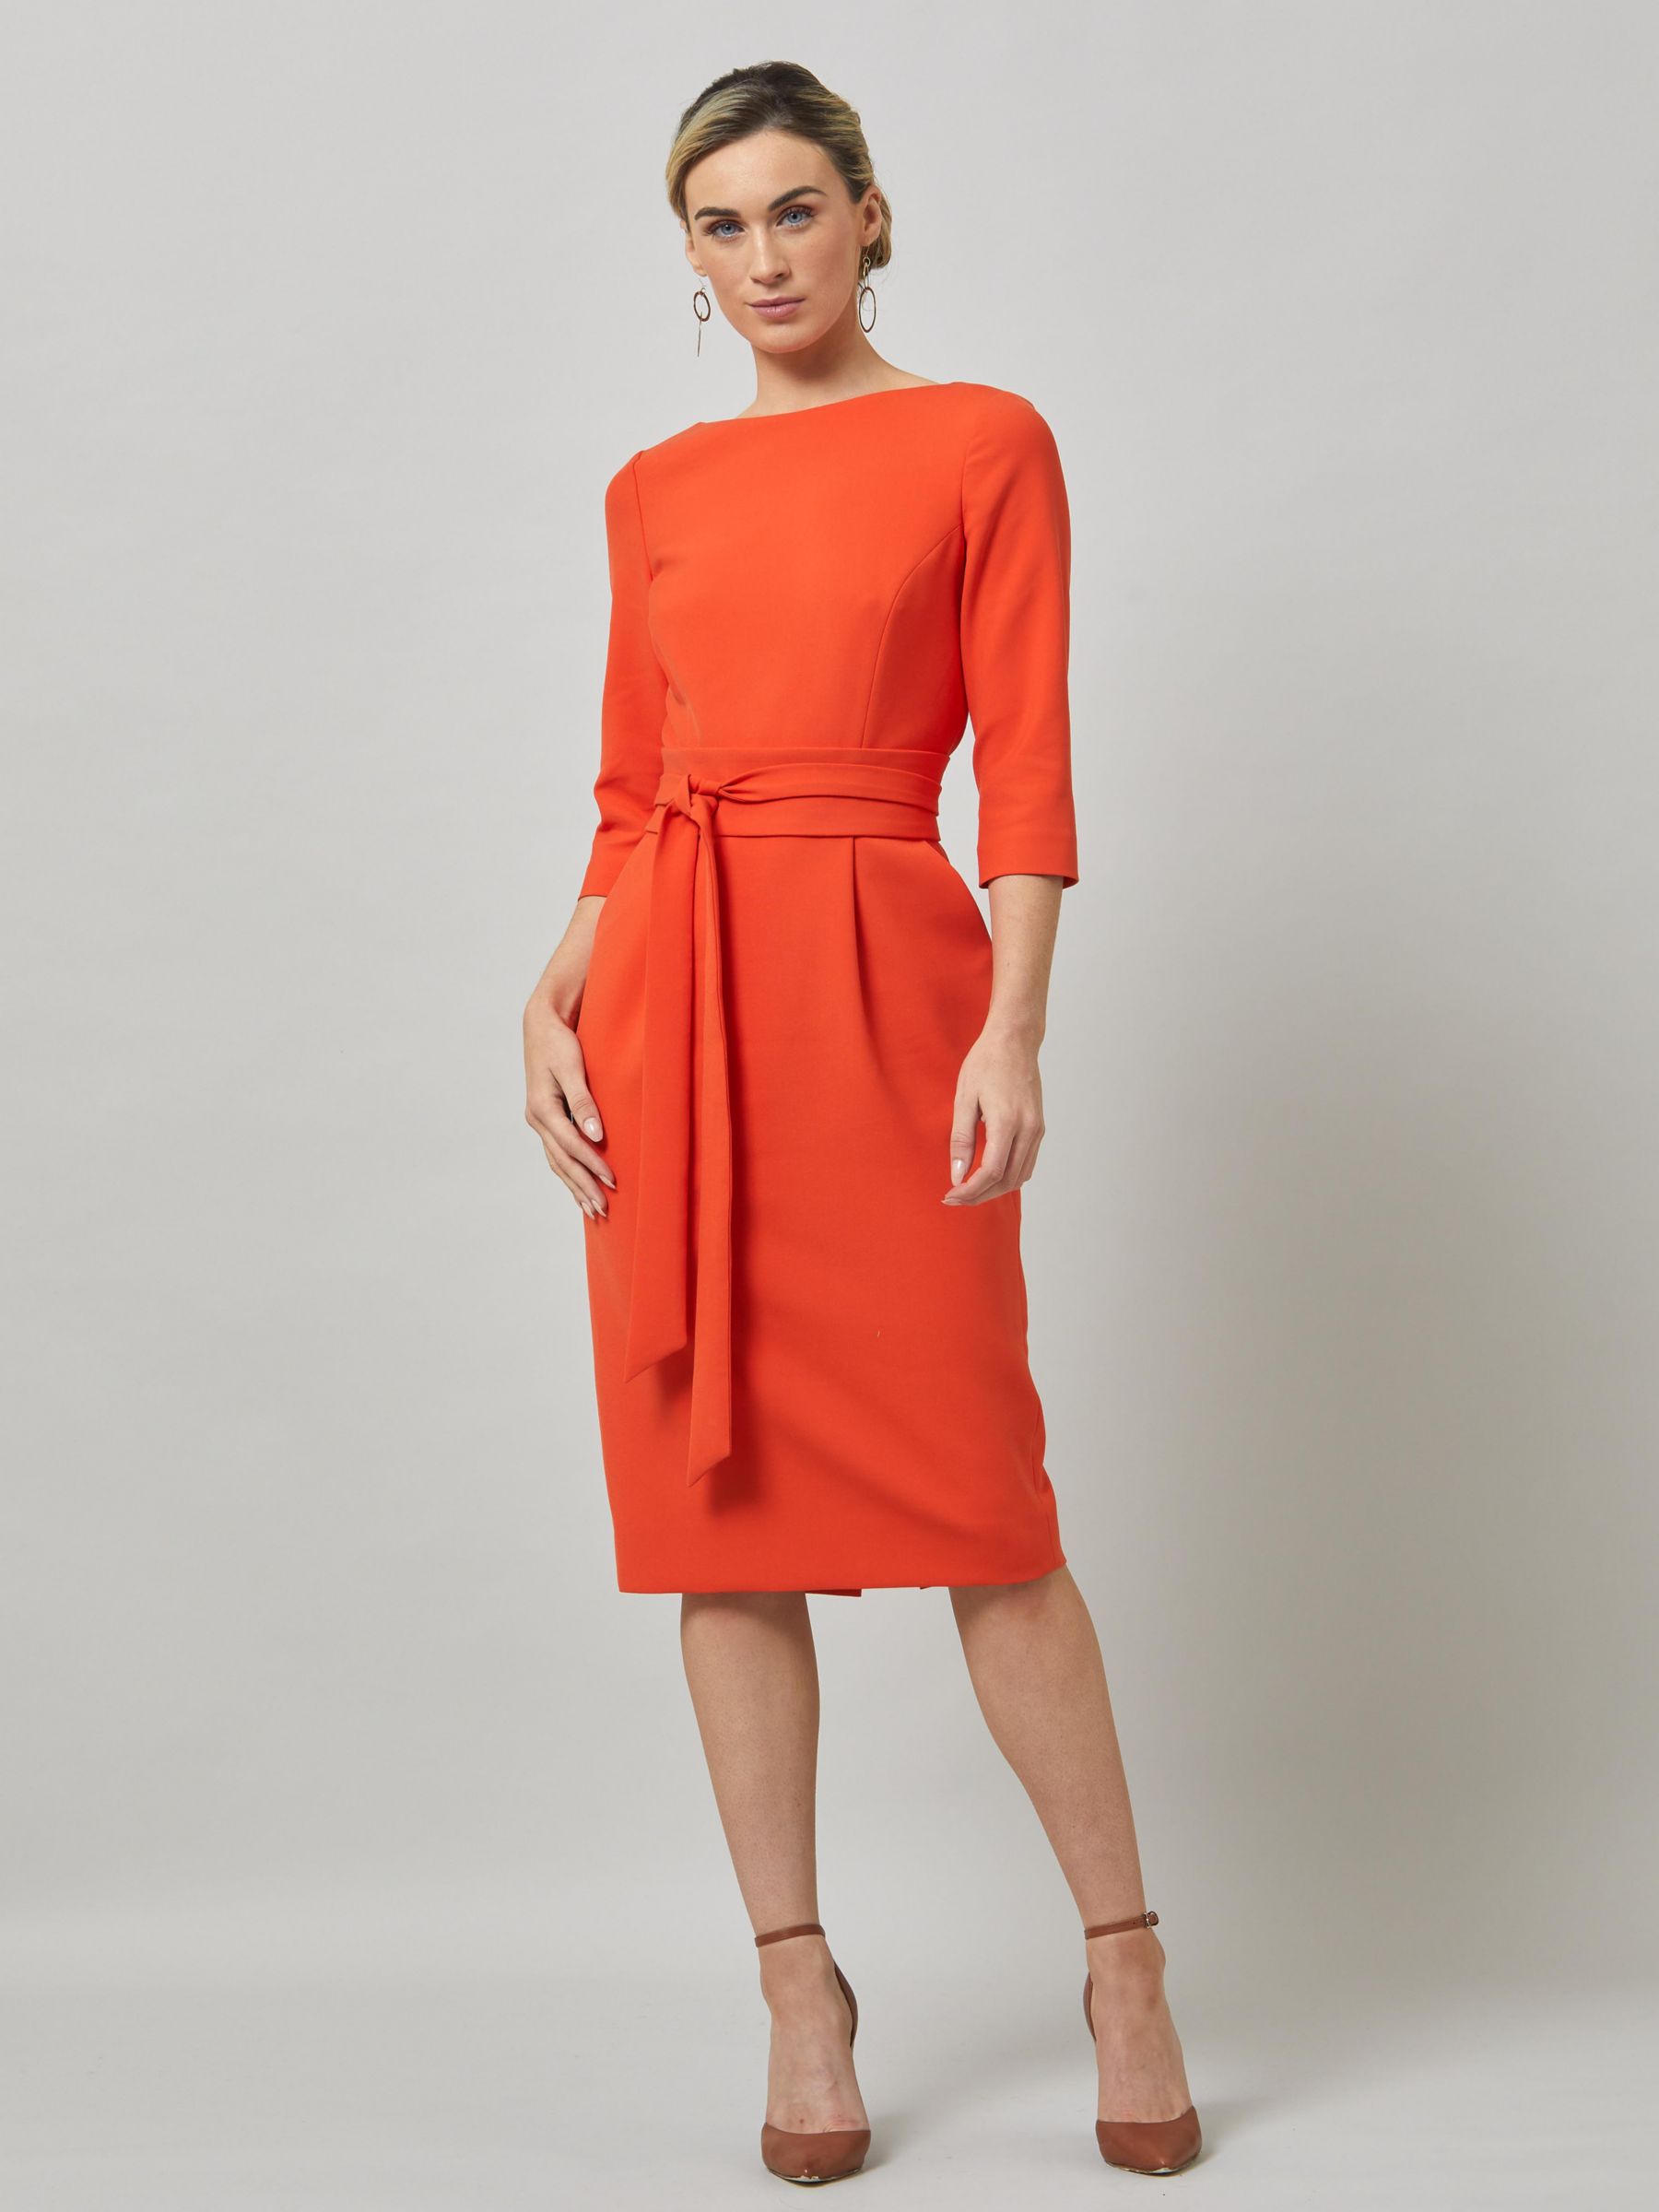 Helen McAlinden Obi Midi Dress, Orange